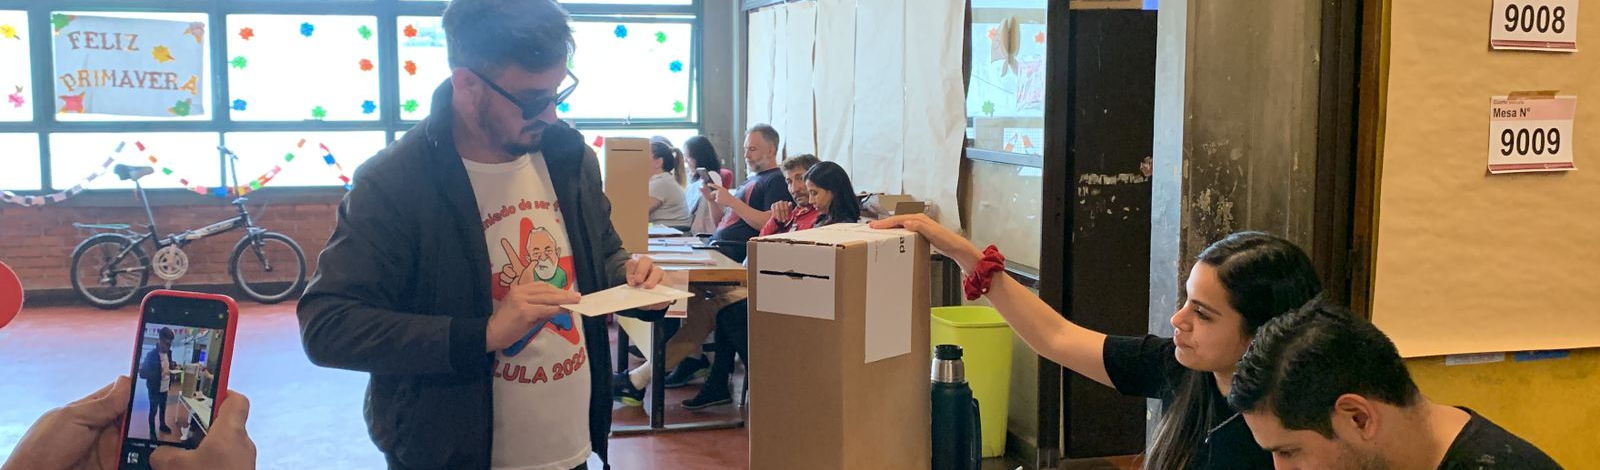 Domingo de eleições na Argentina: brasileiros explicam como estrangeiros votam